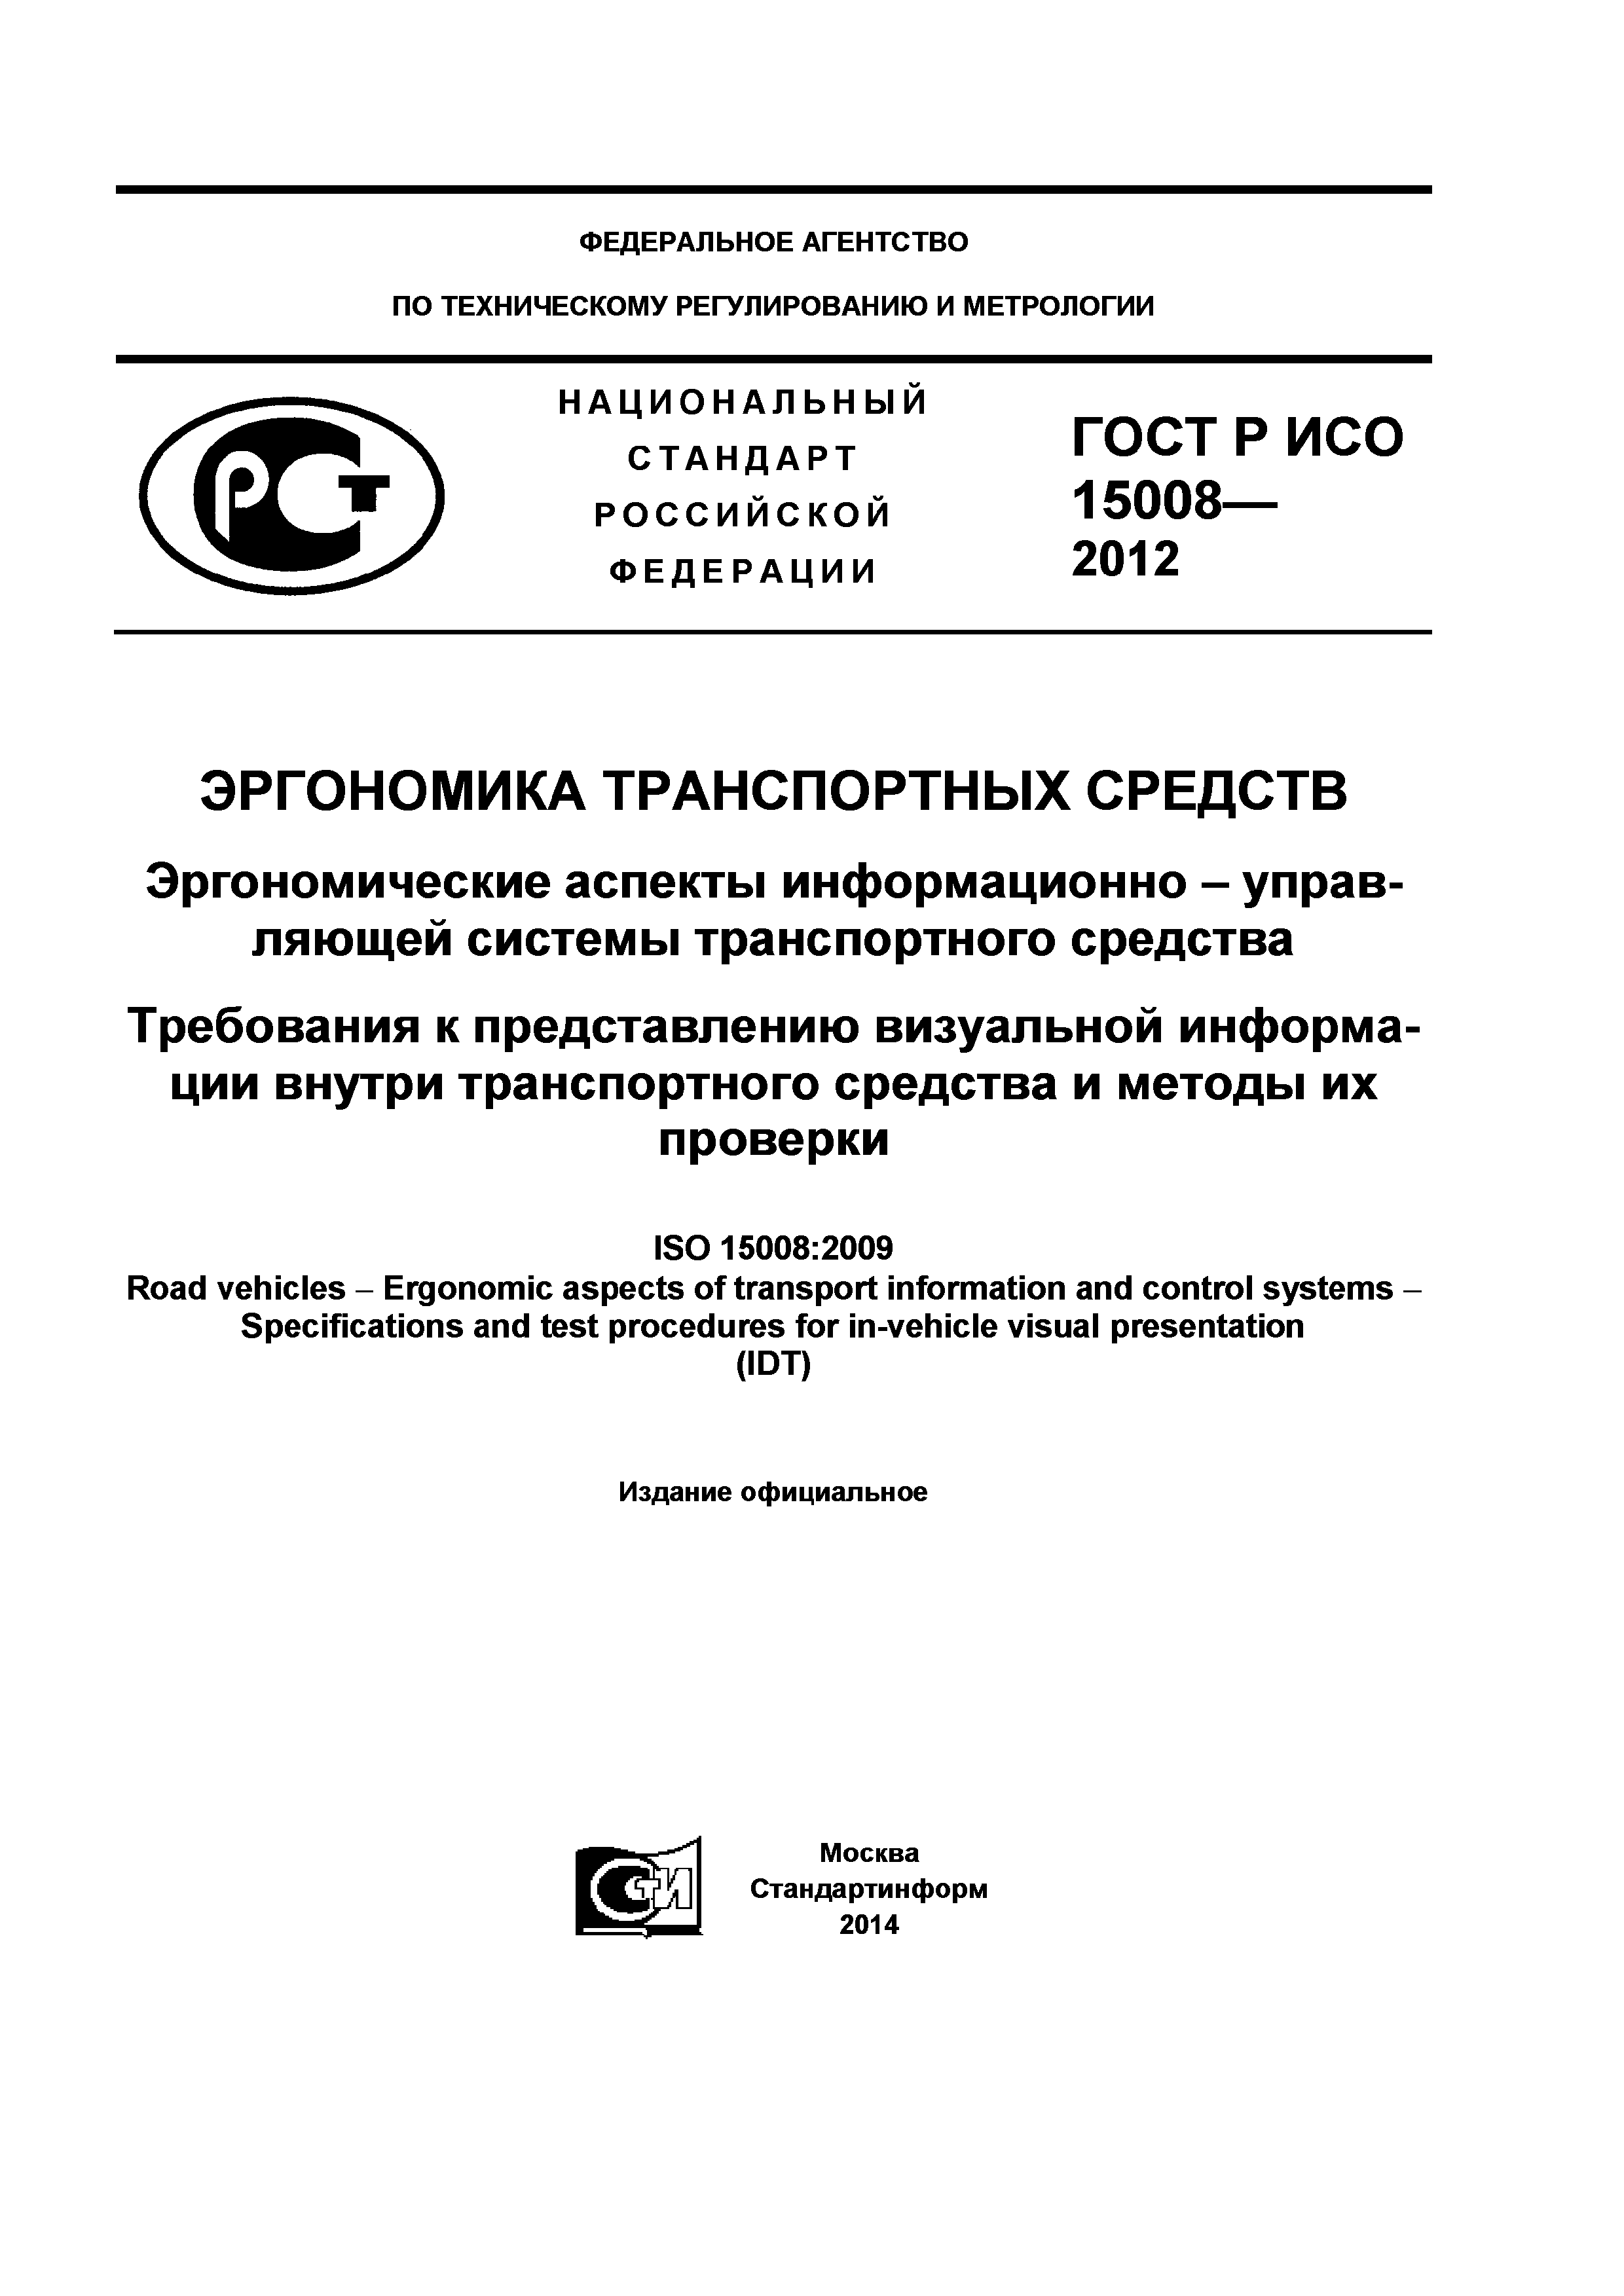 ГОСТ Р ИСО 15008-2012